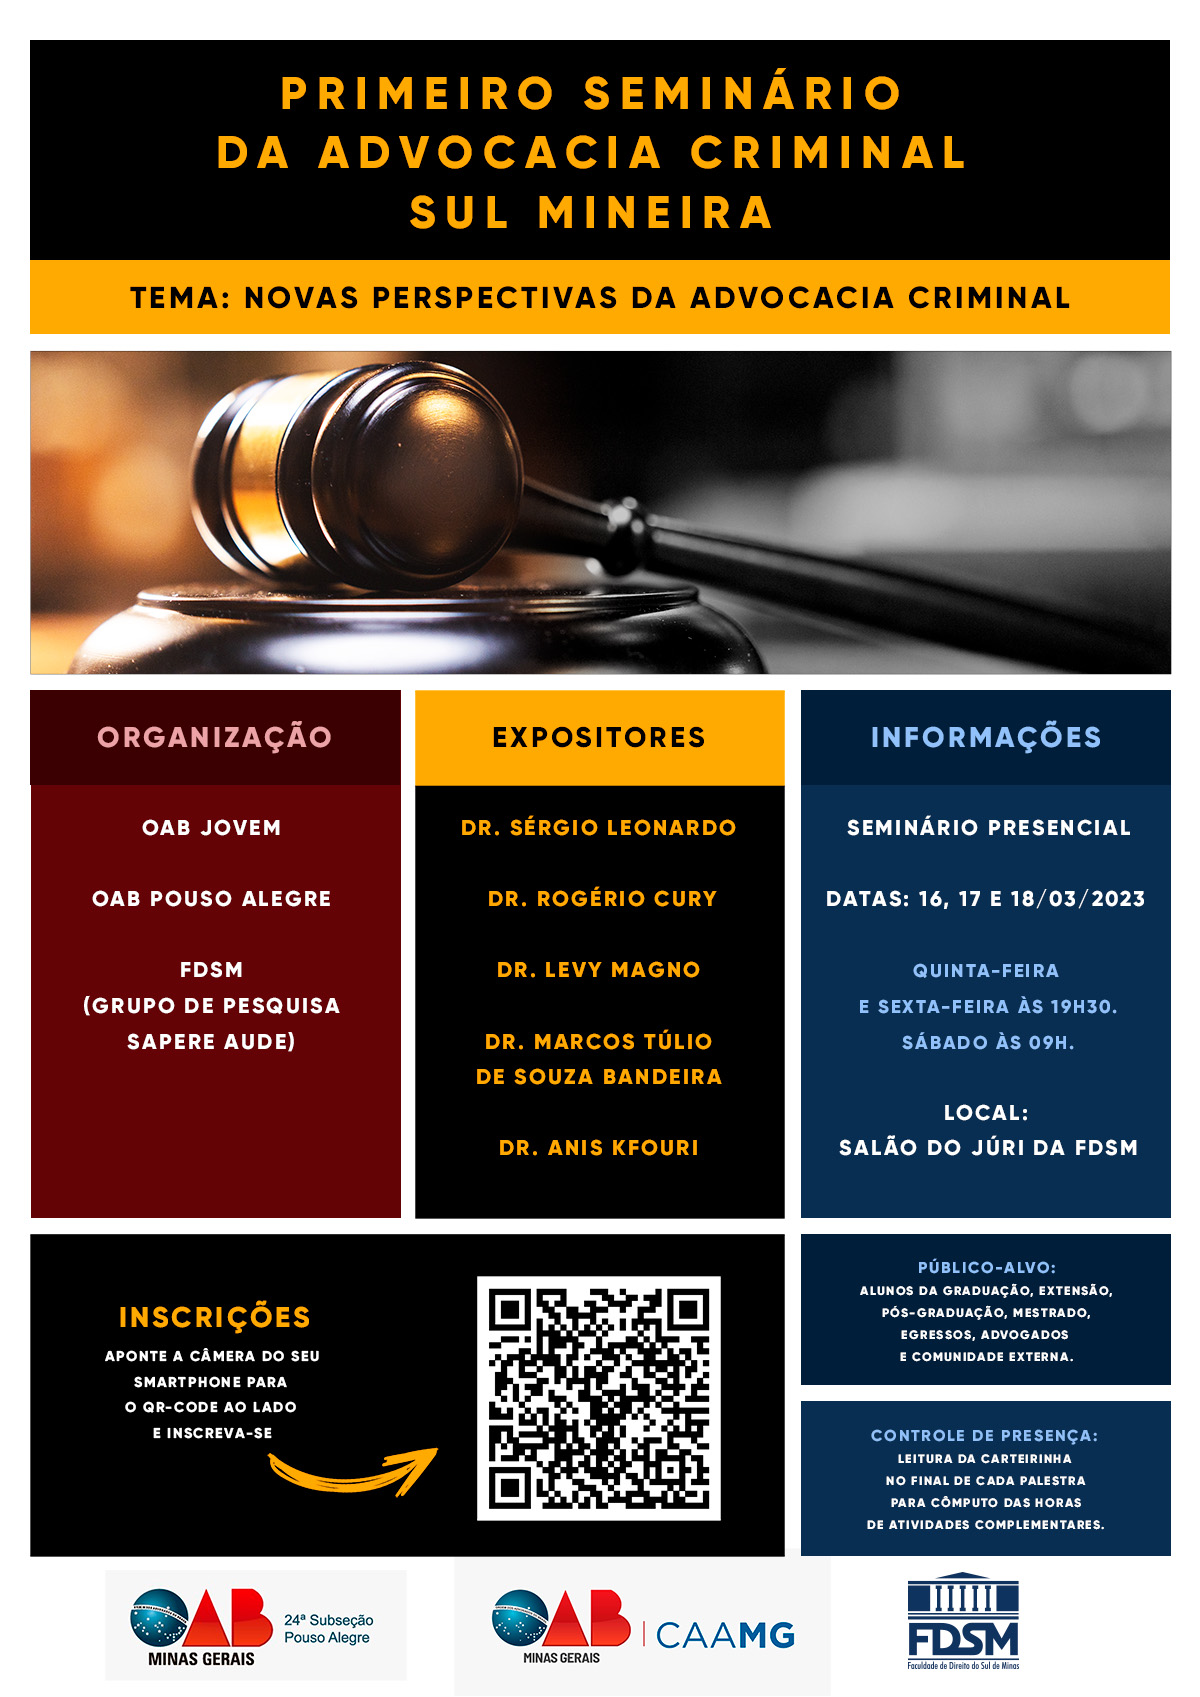 Evento 963 - I SEMINÃRIO DA ADVOCACIA CRIMINAL SUL MINEIRA 'NOVAS PERSPECTIVAS DA ADVOCACIA CRIMINAL'.